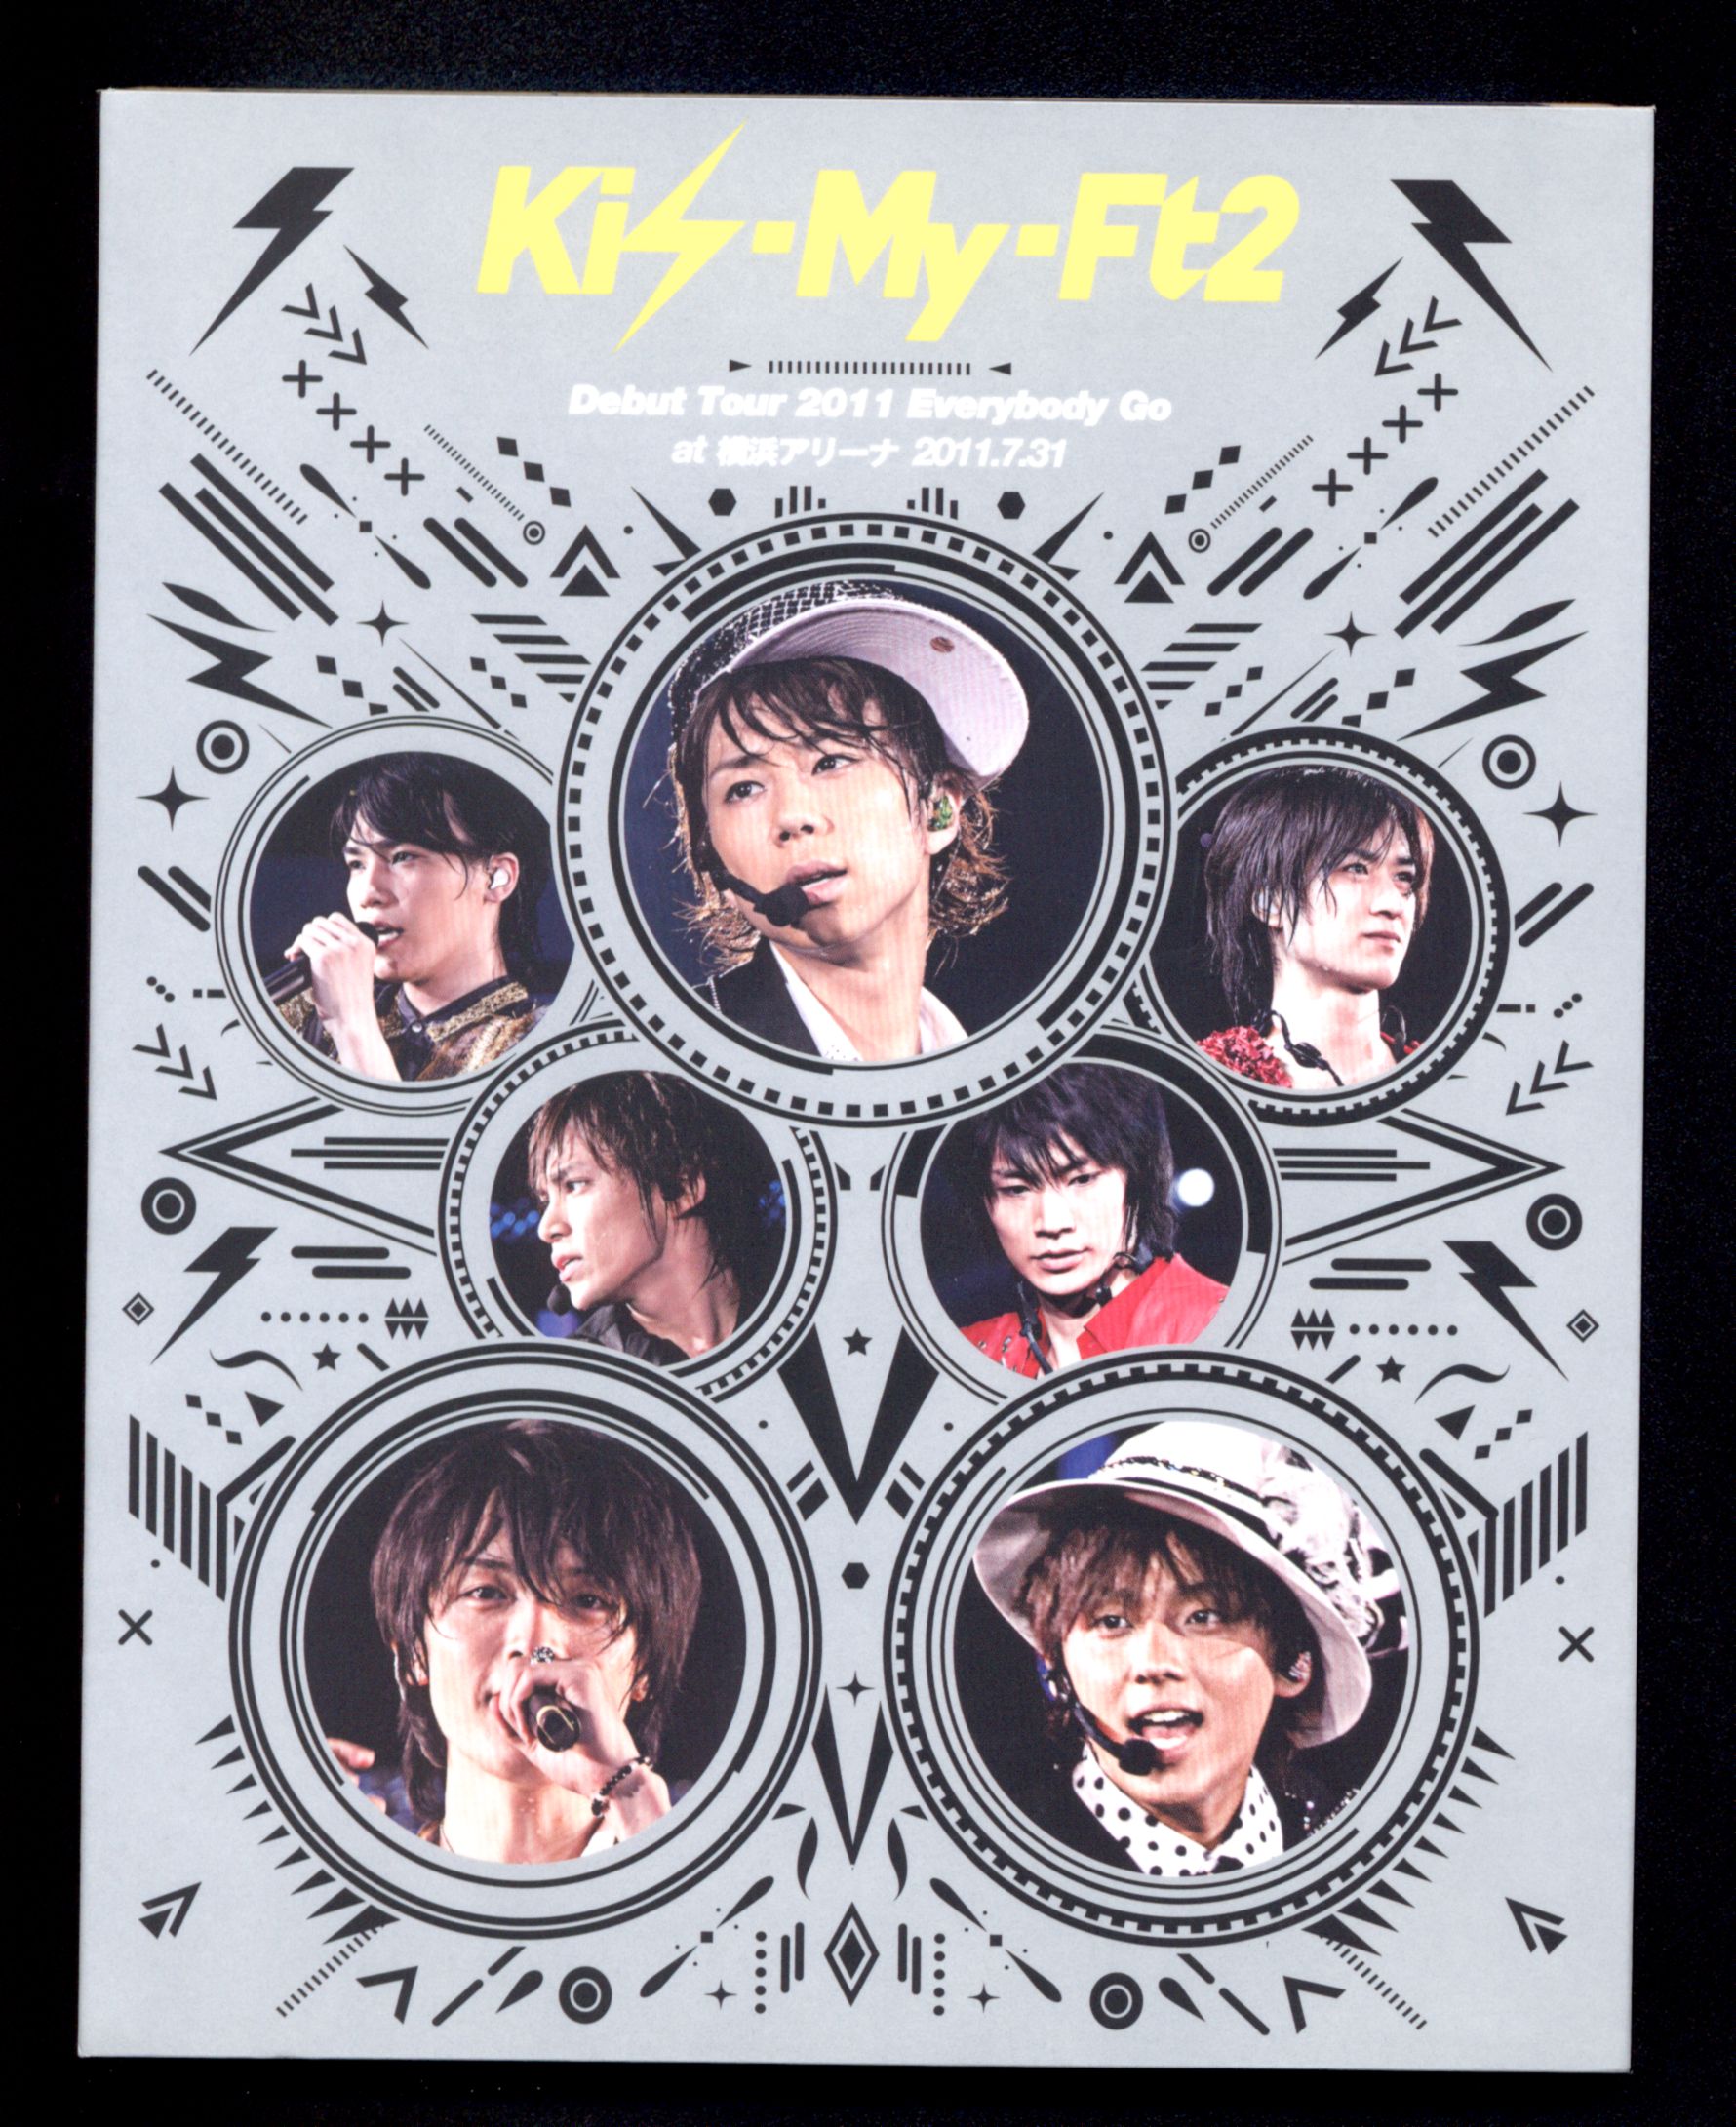 Kis-My-Ft2 Debut Tour 2011 Everybody GoDVD/ブルーレイ - hippg.com